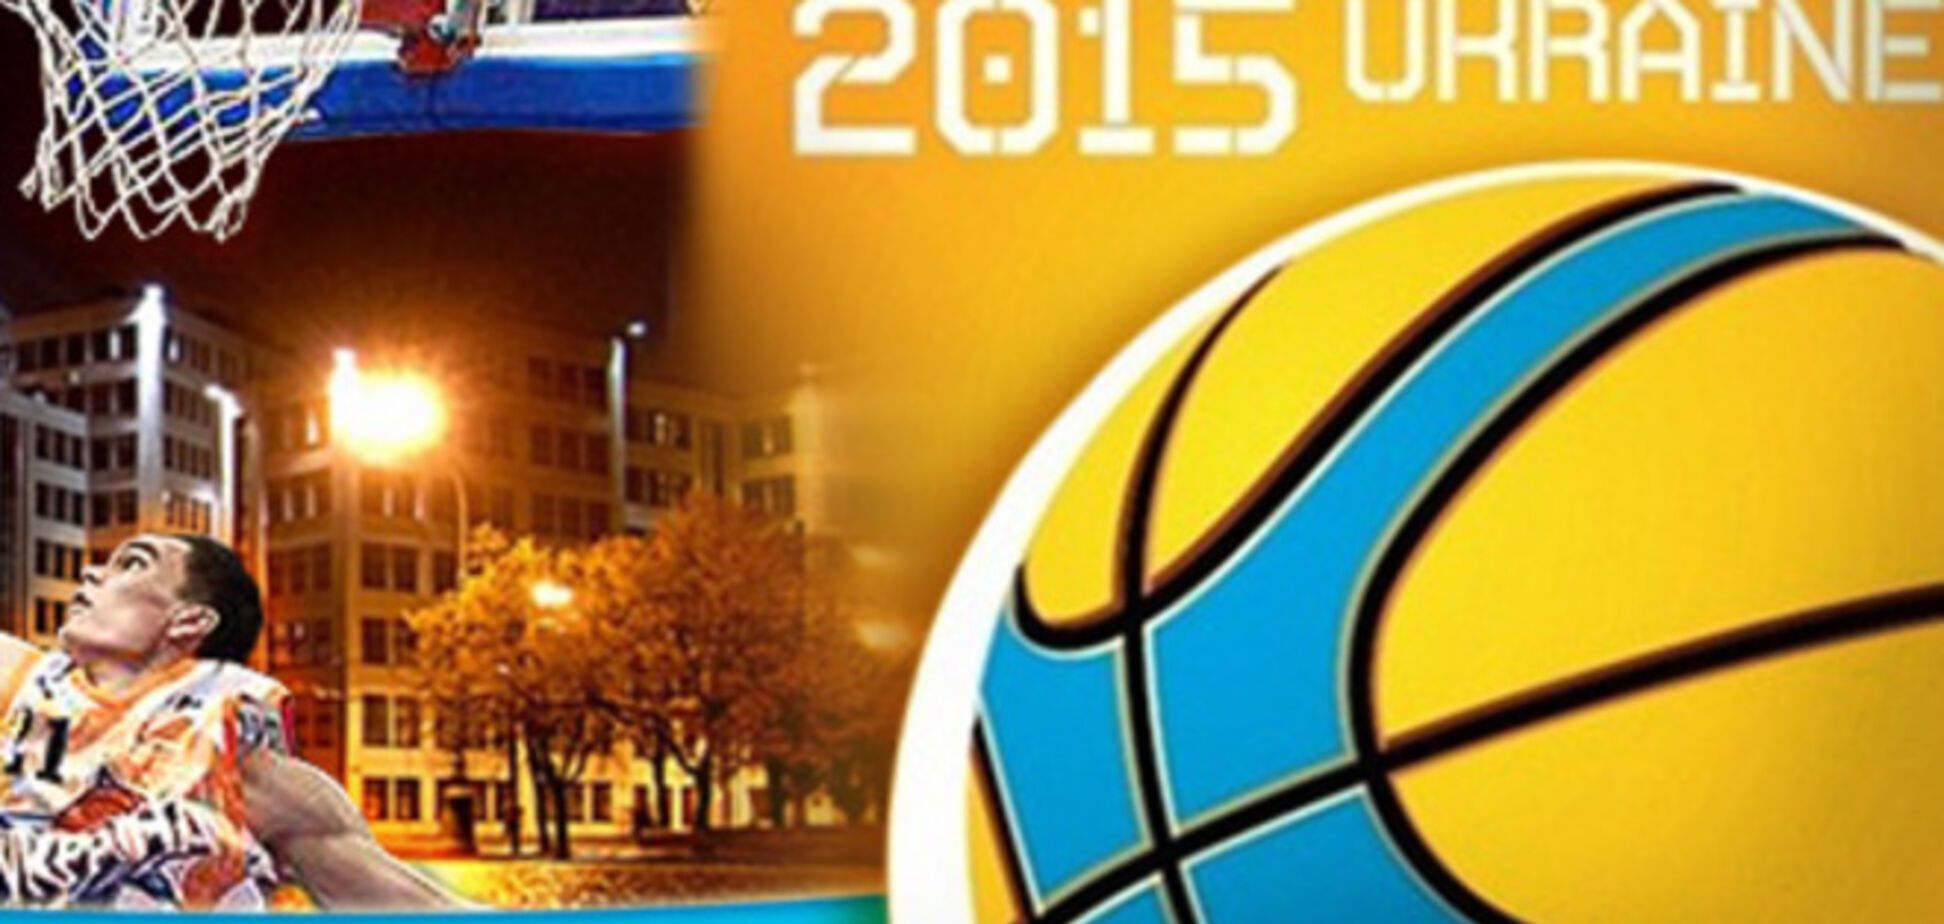 Евробаскет в Украине перенесли с 2015 на 2017 год